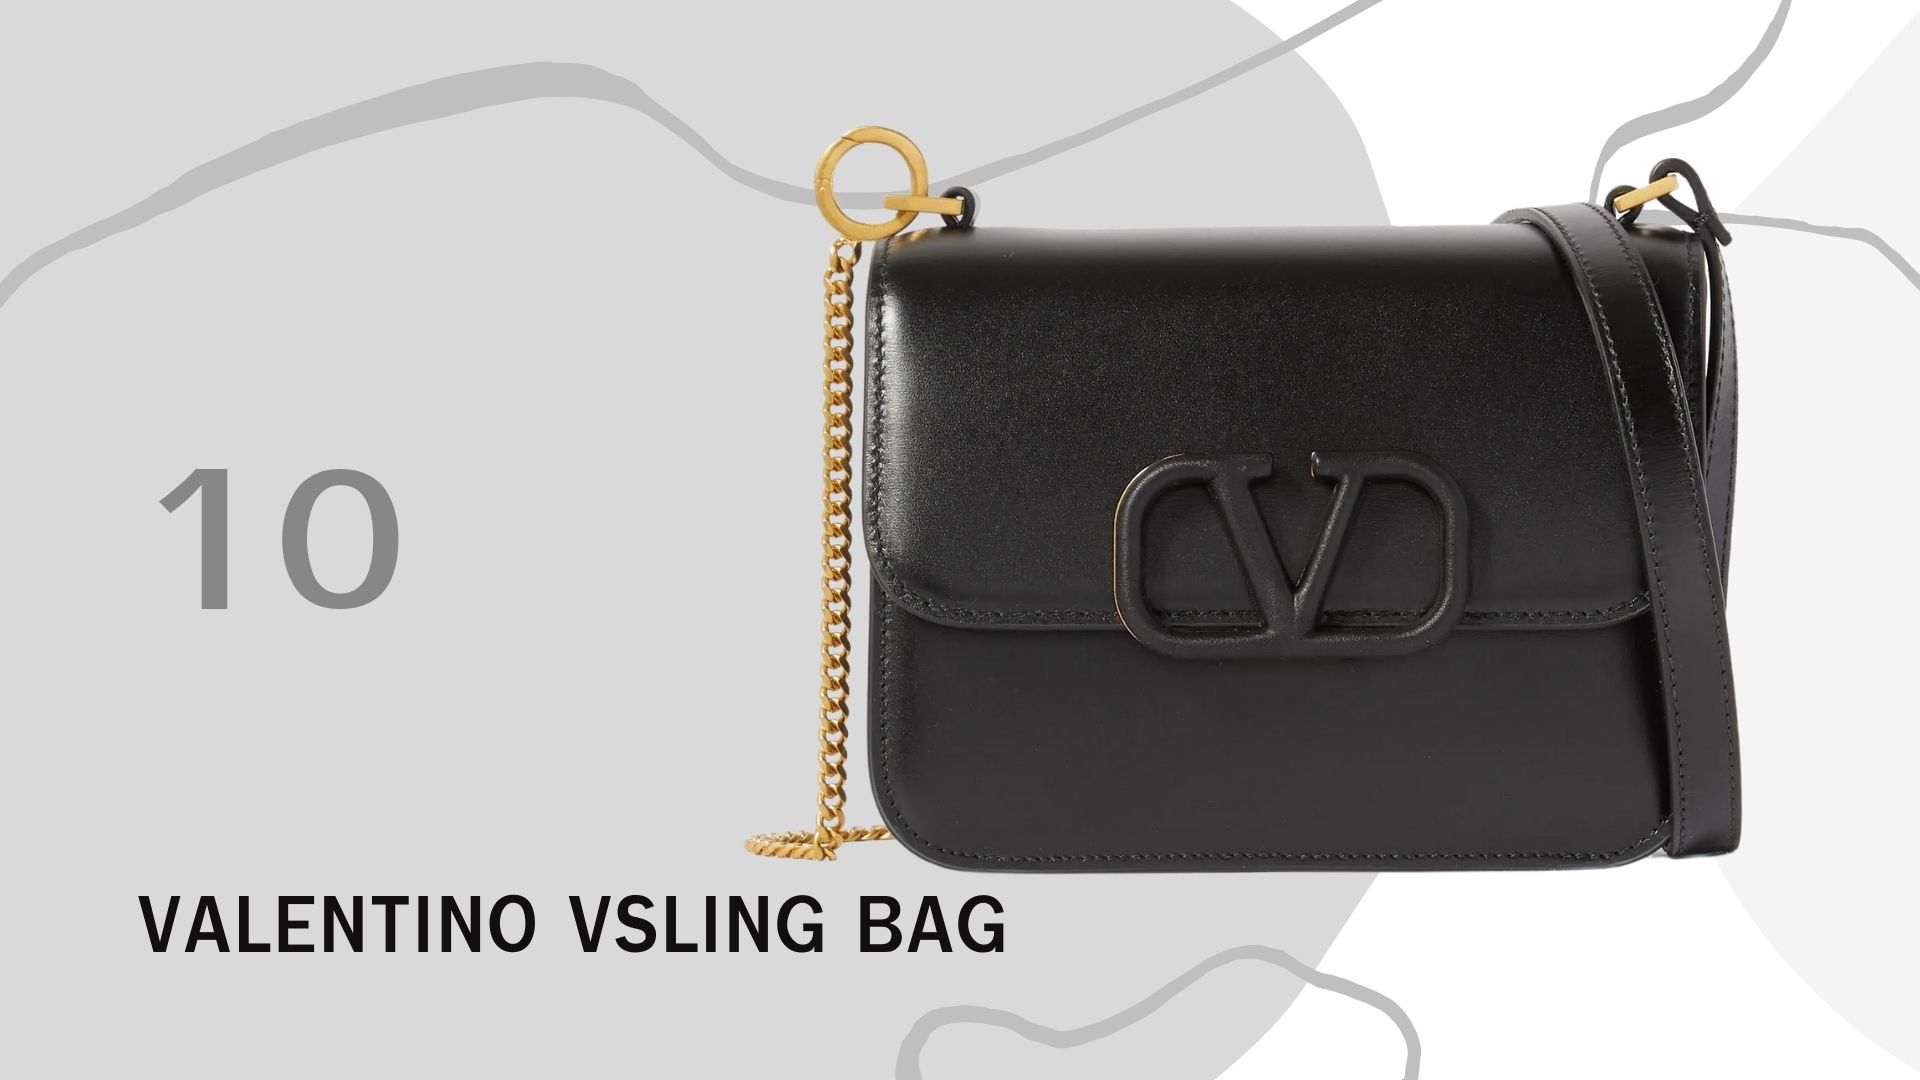 รวม 10 กระเป๋า ที่มาแรงทั้งหมดในปี 2020 นี้ Valentino Vsling Bag